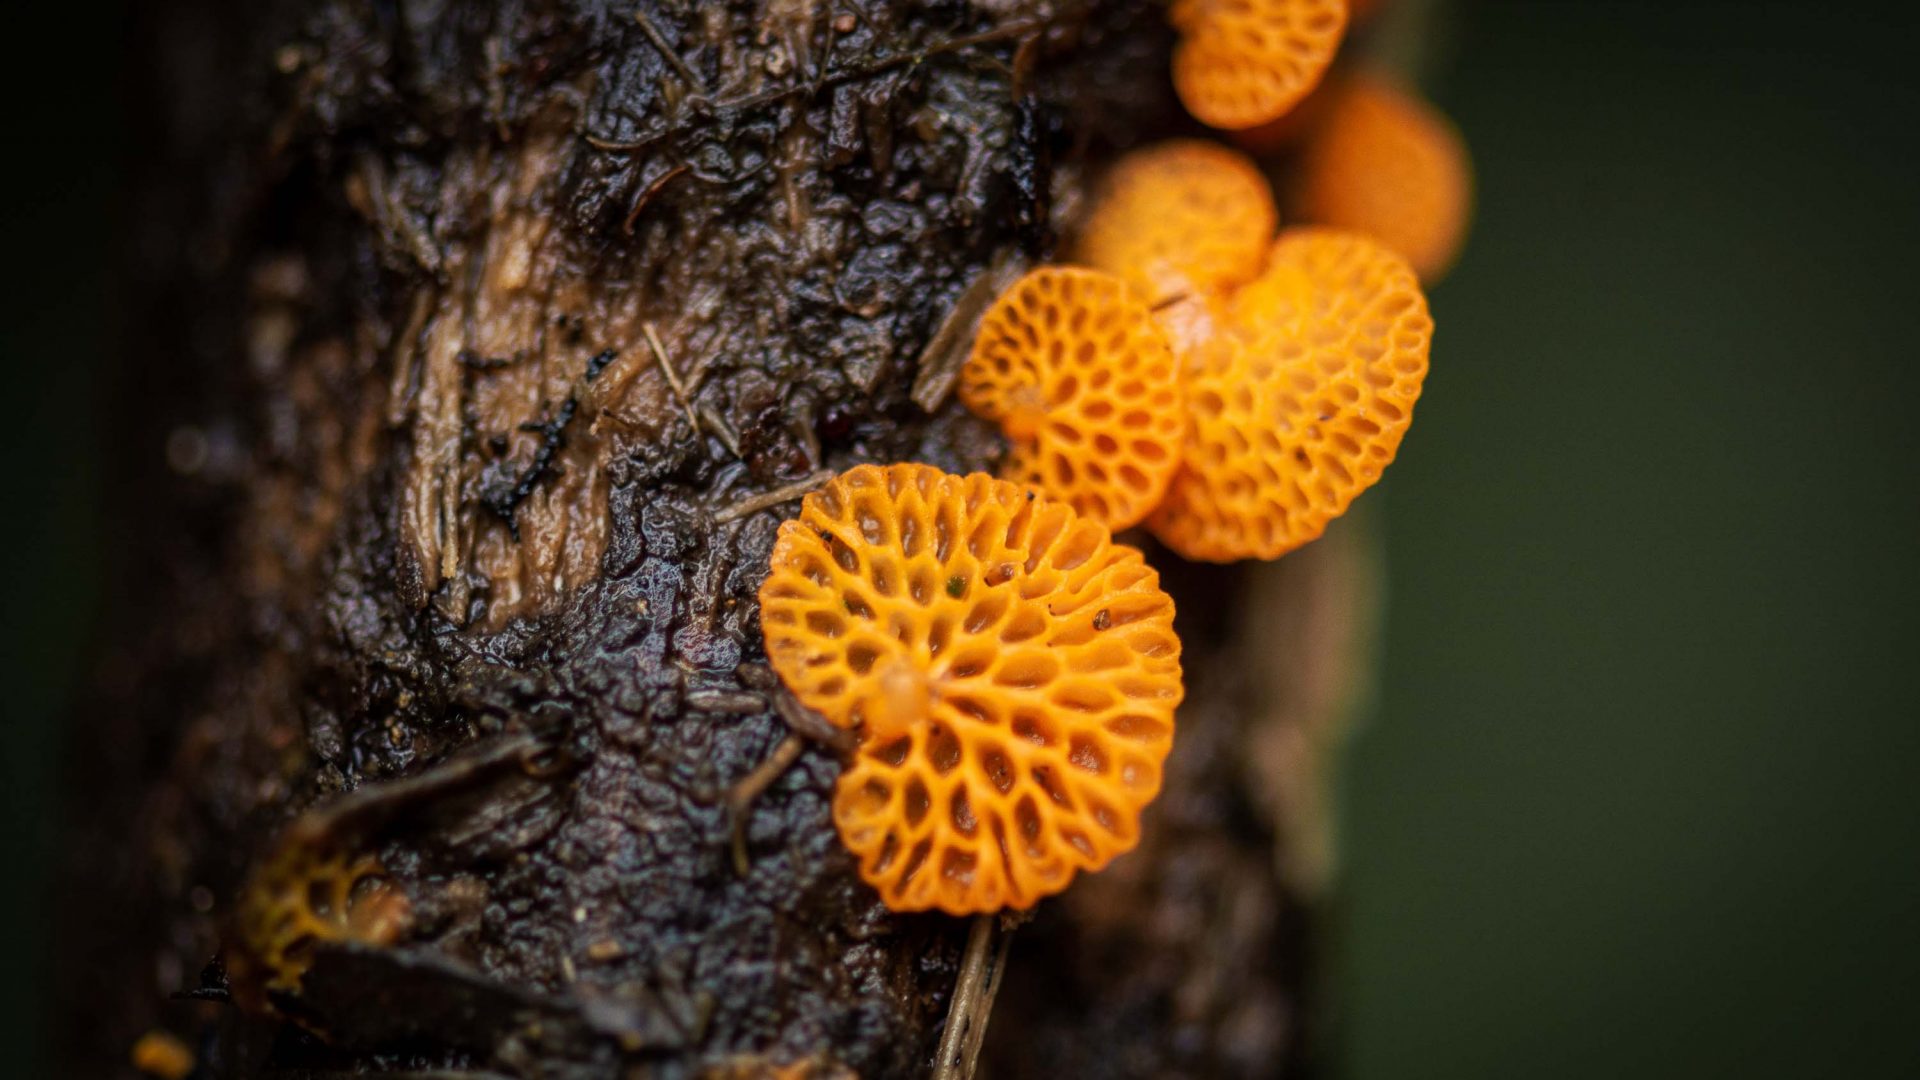 Orange mushrooms on a piece of wood.